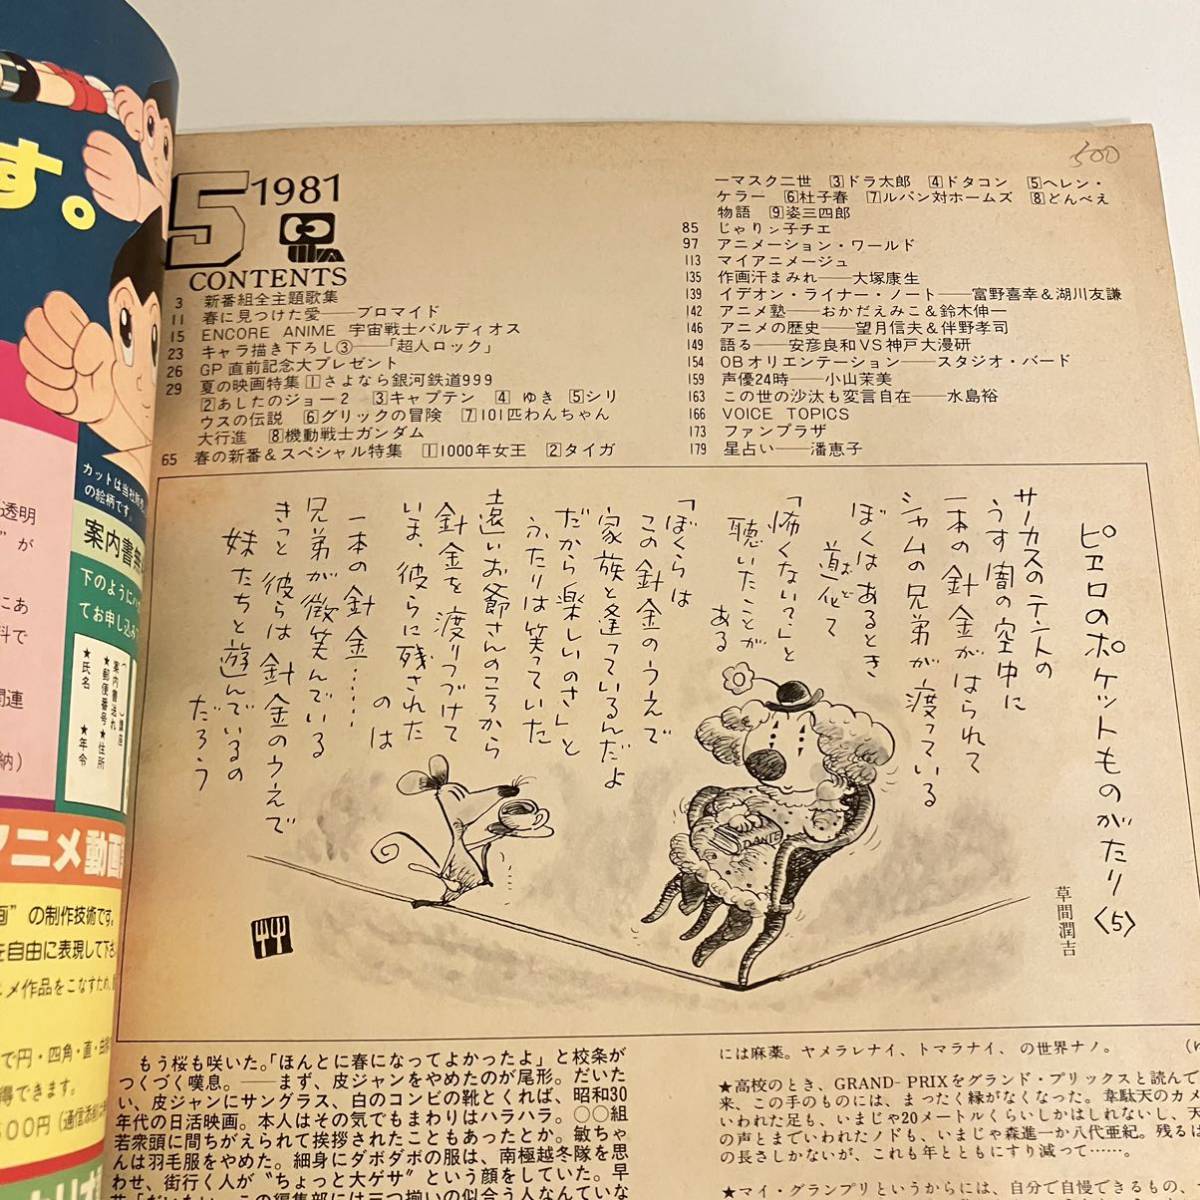 230520[ немного с дефектом дешевый ] Animage 1981 год 5 месяц номер vol.35*.. если Ginga Tetsudou 999 Nagaoka превосходящий звезда Locke The Superman * редкий аниме журнал retro прекрасный товар 